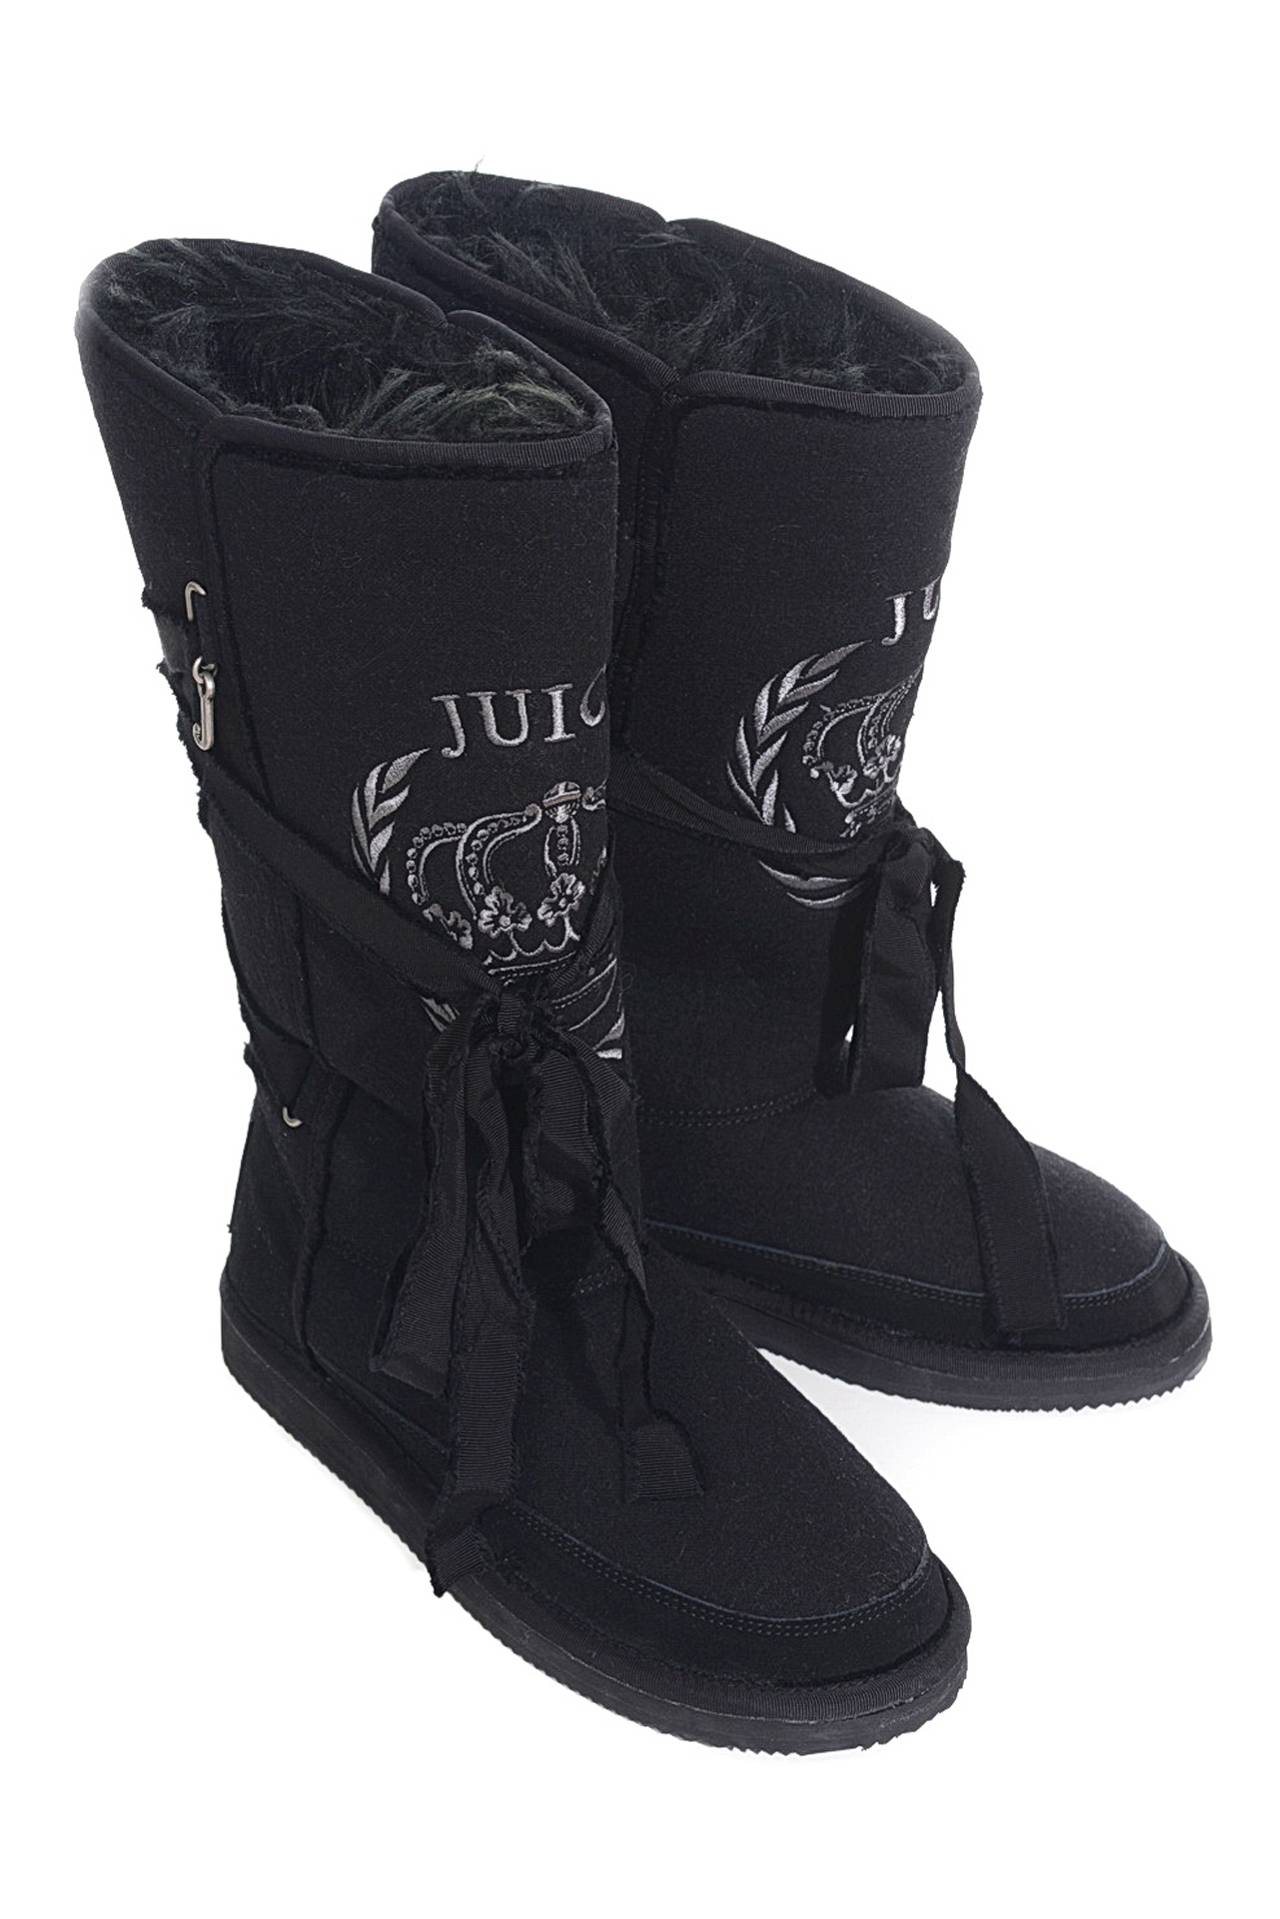 Обувь женская Сапоги JUICY COUTURE (J562123/11.1). Купить за 8450 руб.